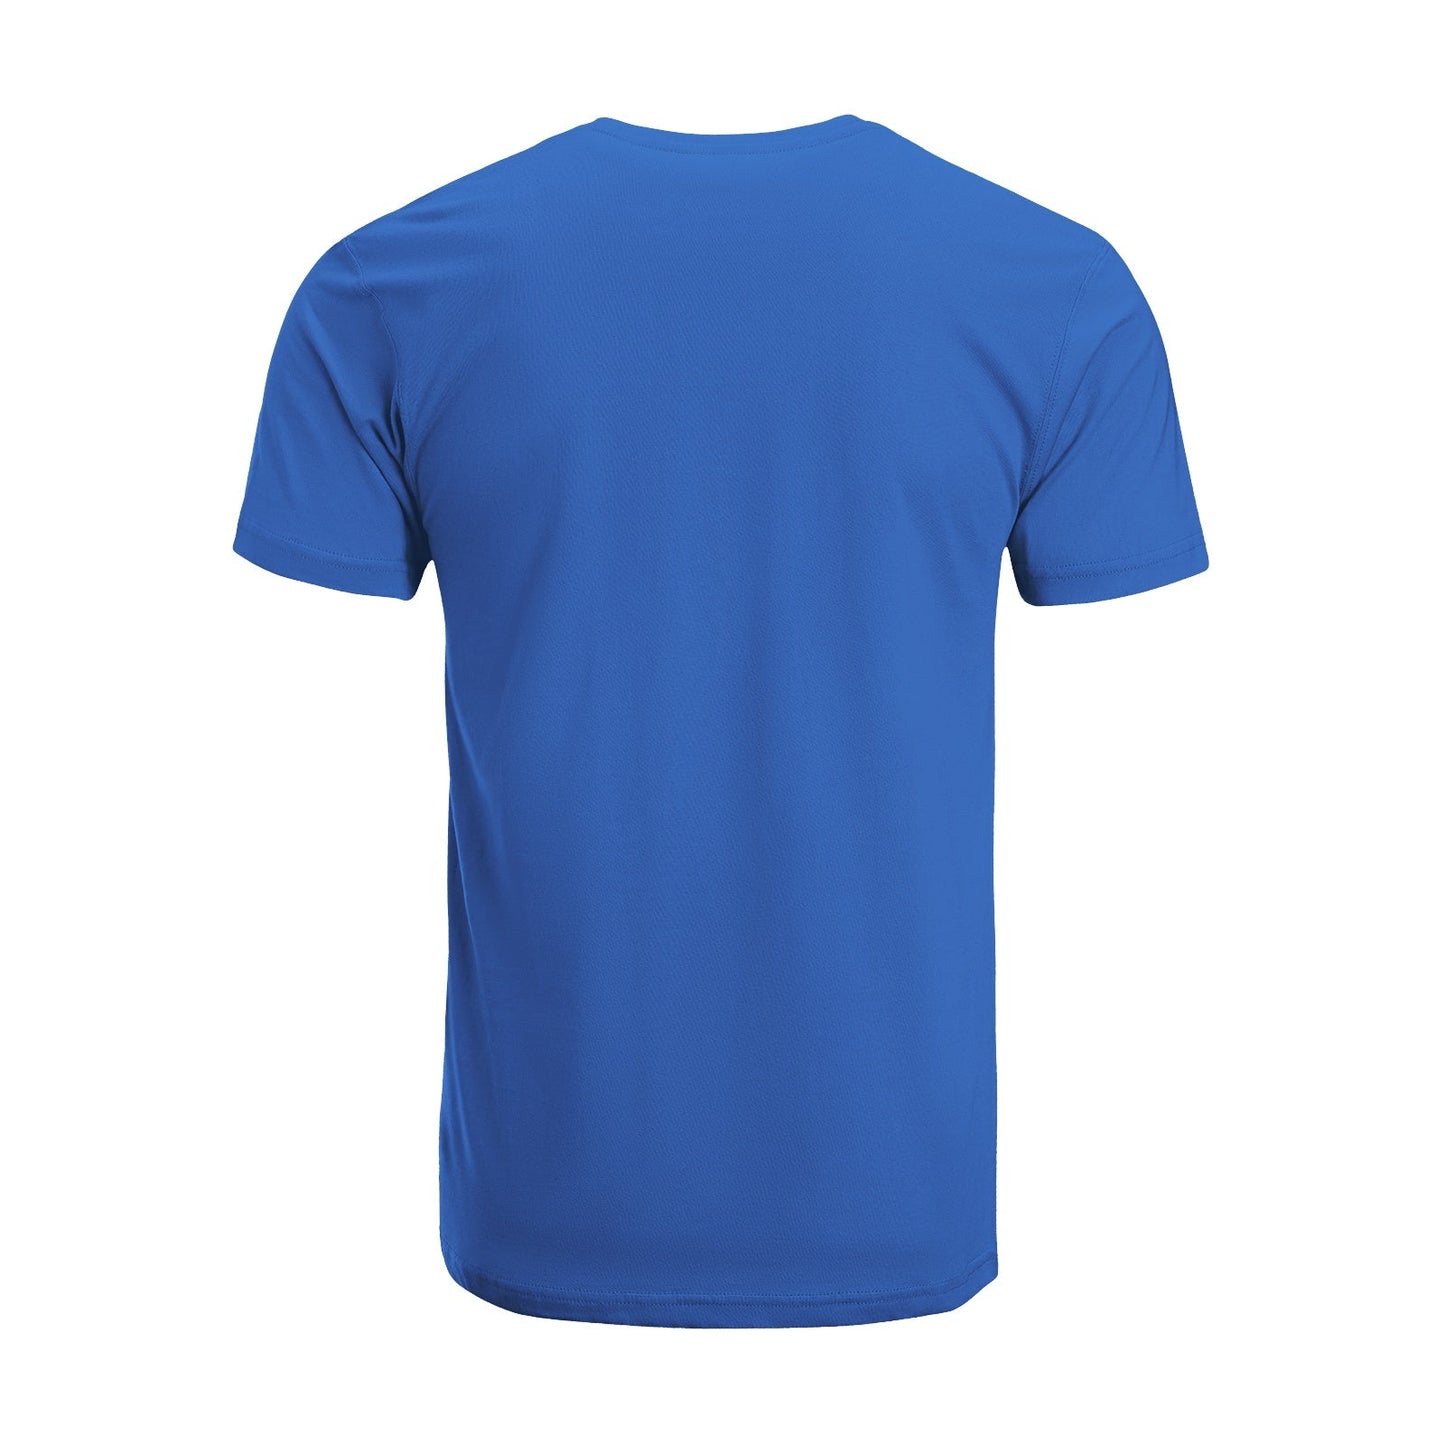 Unisex Short Sleeve Crew Neck Cotton Jersey T-Shirt TRUCK 13